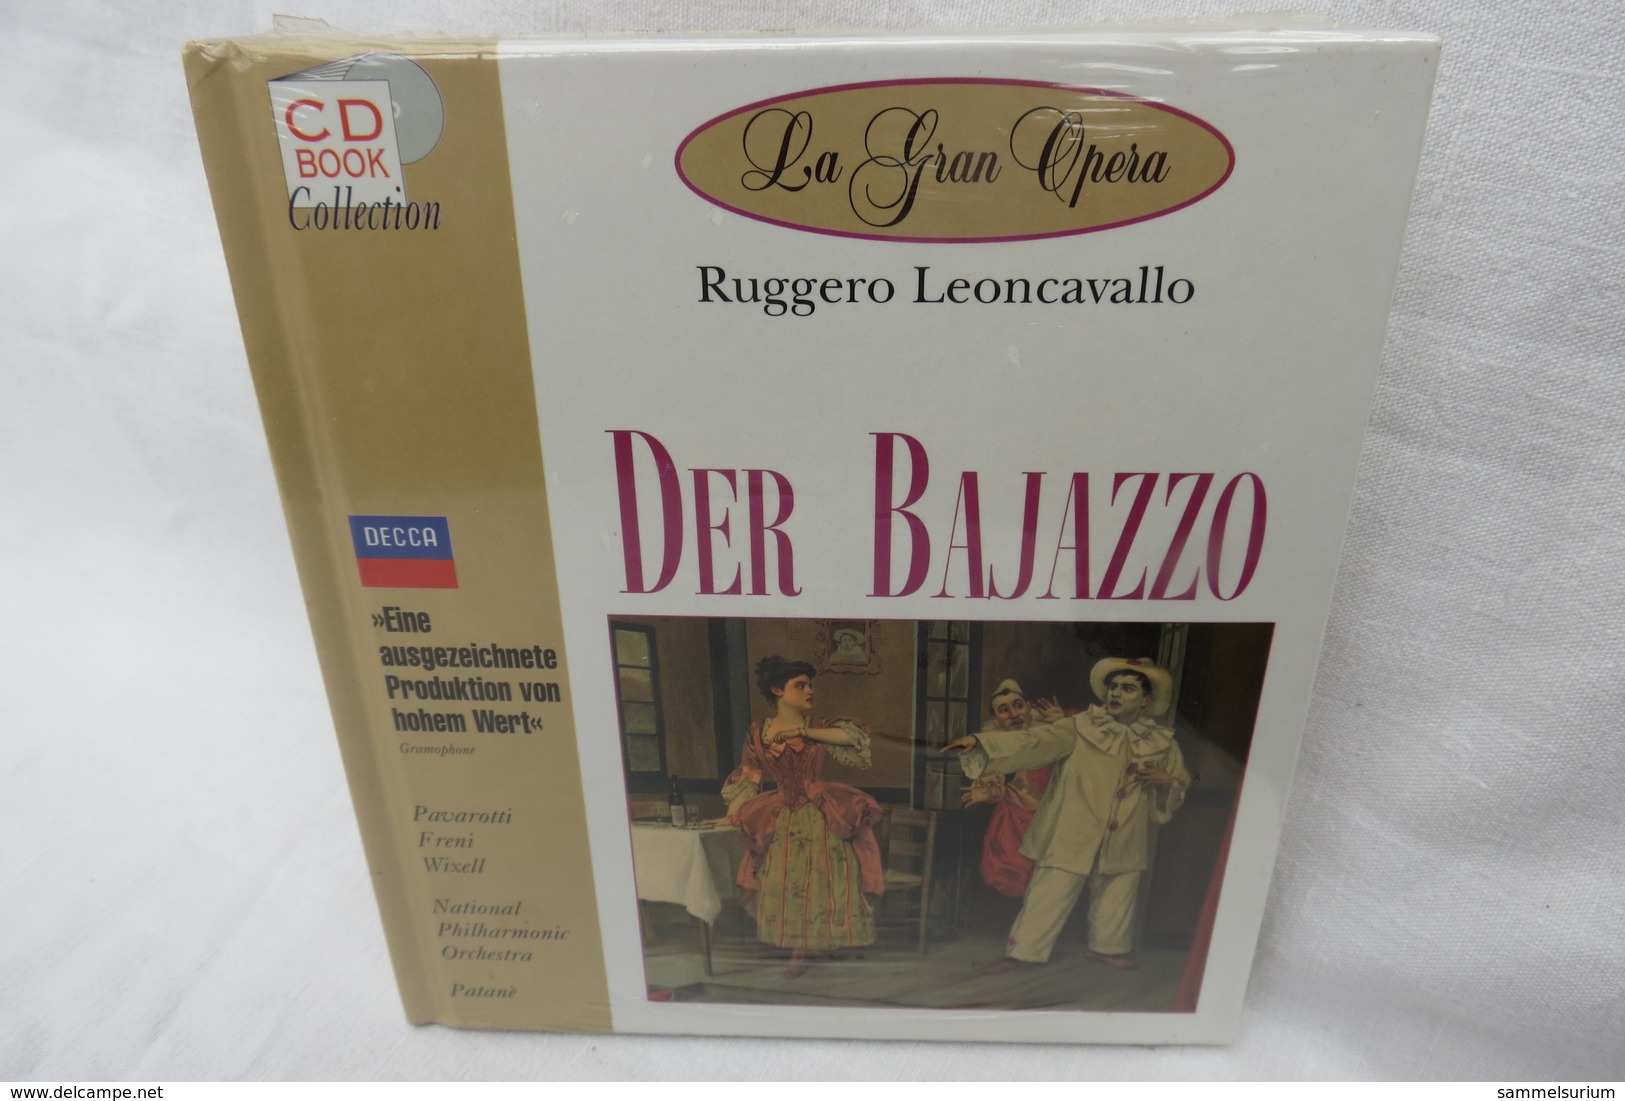 CD "Der Bajazzo / Ruggero Leoncavallo" Mit Buch Aus Der CD Book Collection (ungeöffnet, Original Eingeschweißt) - Opera